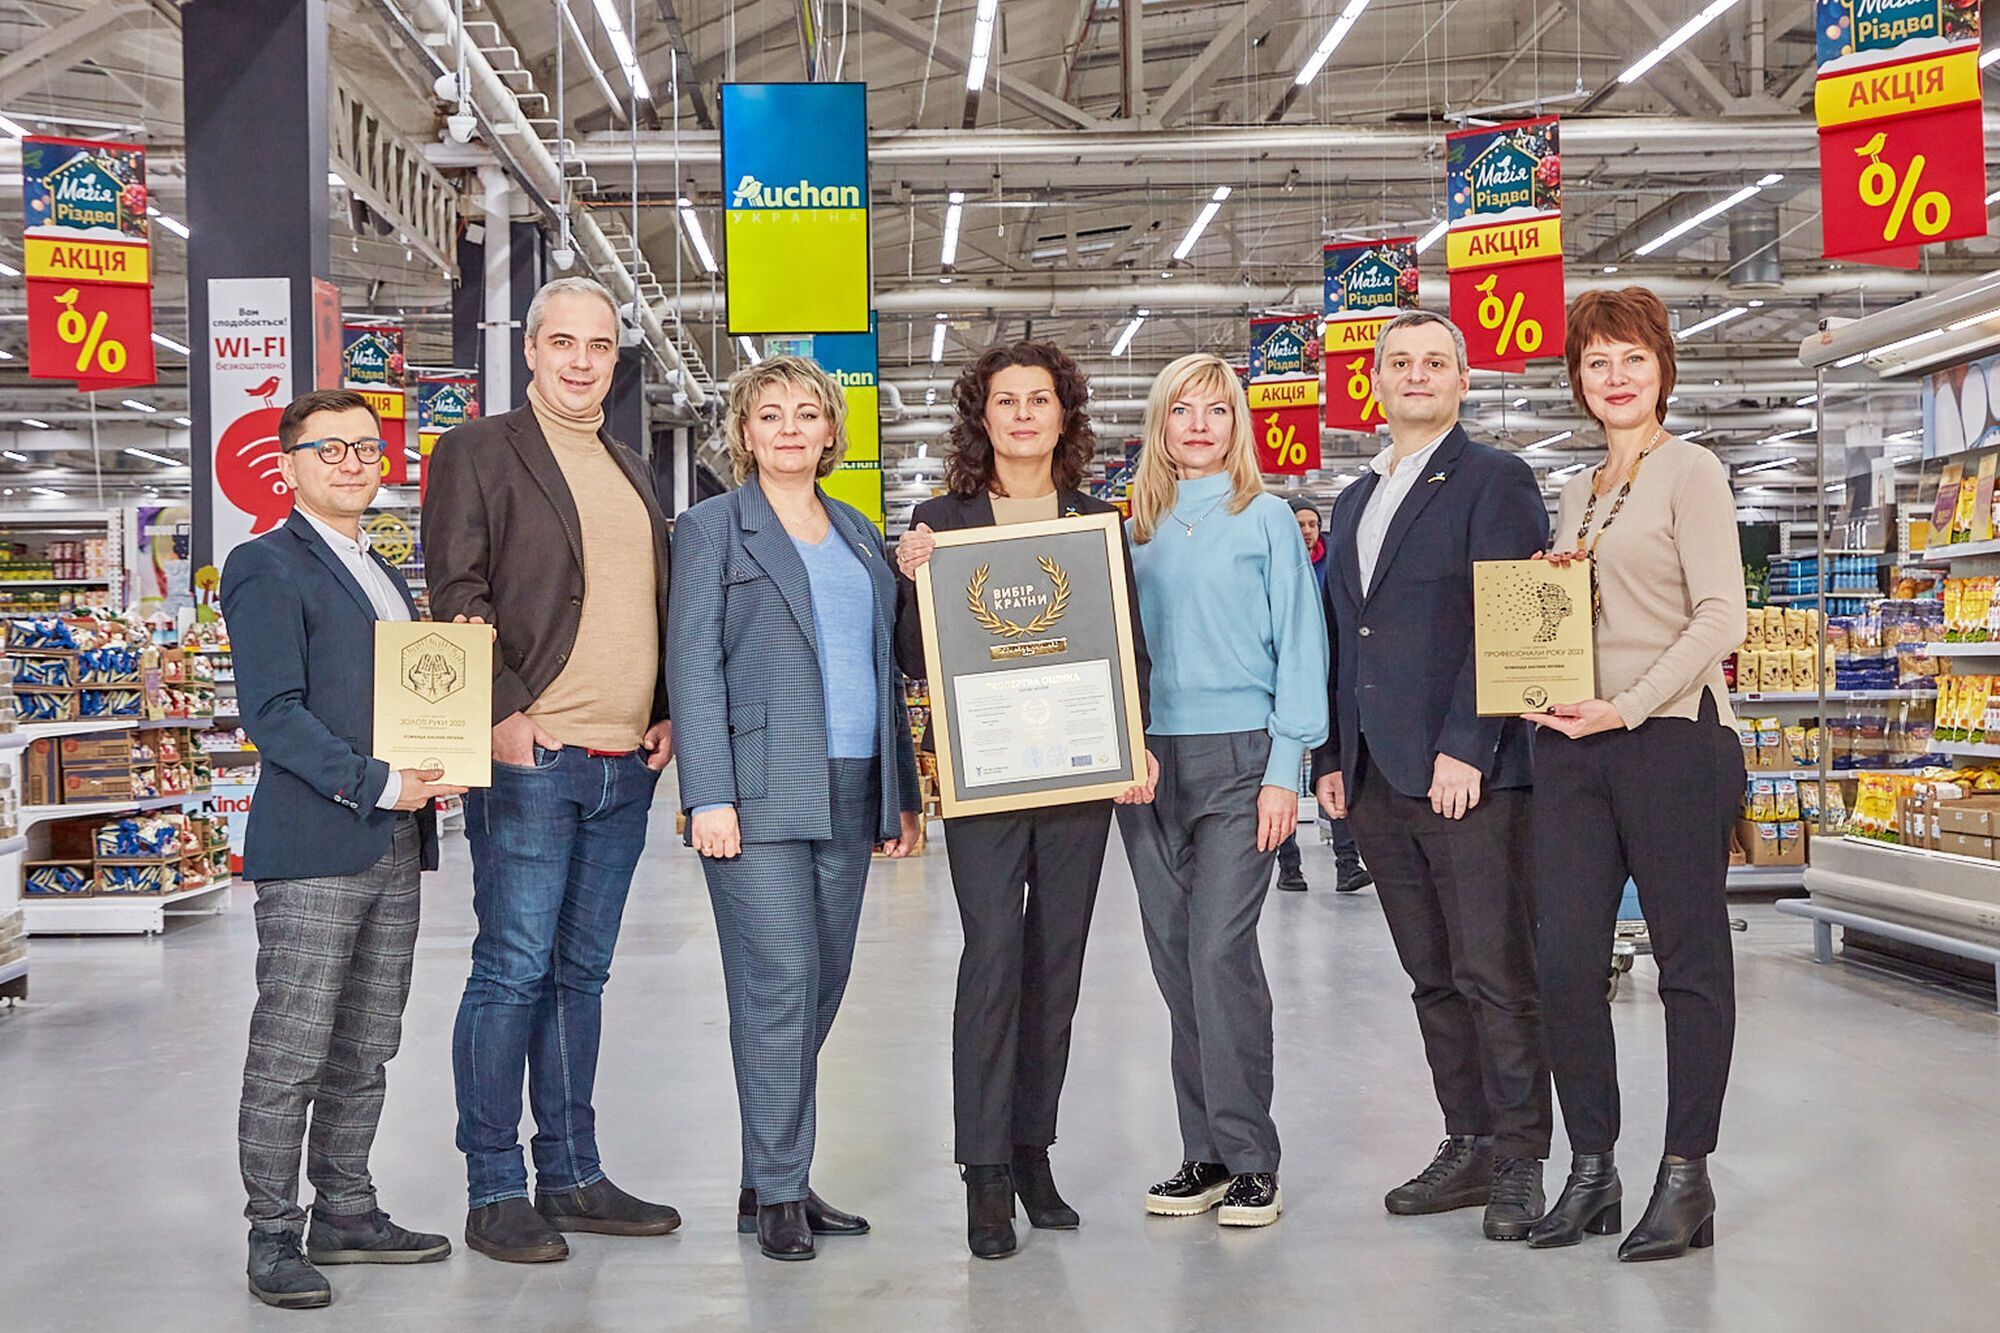 Auchan Украина одержала победу за "Экономную корзину года": какие товары входят